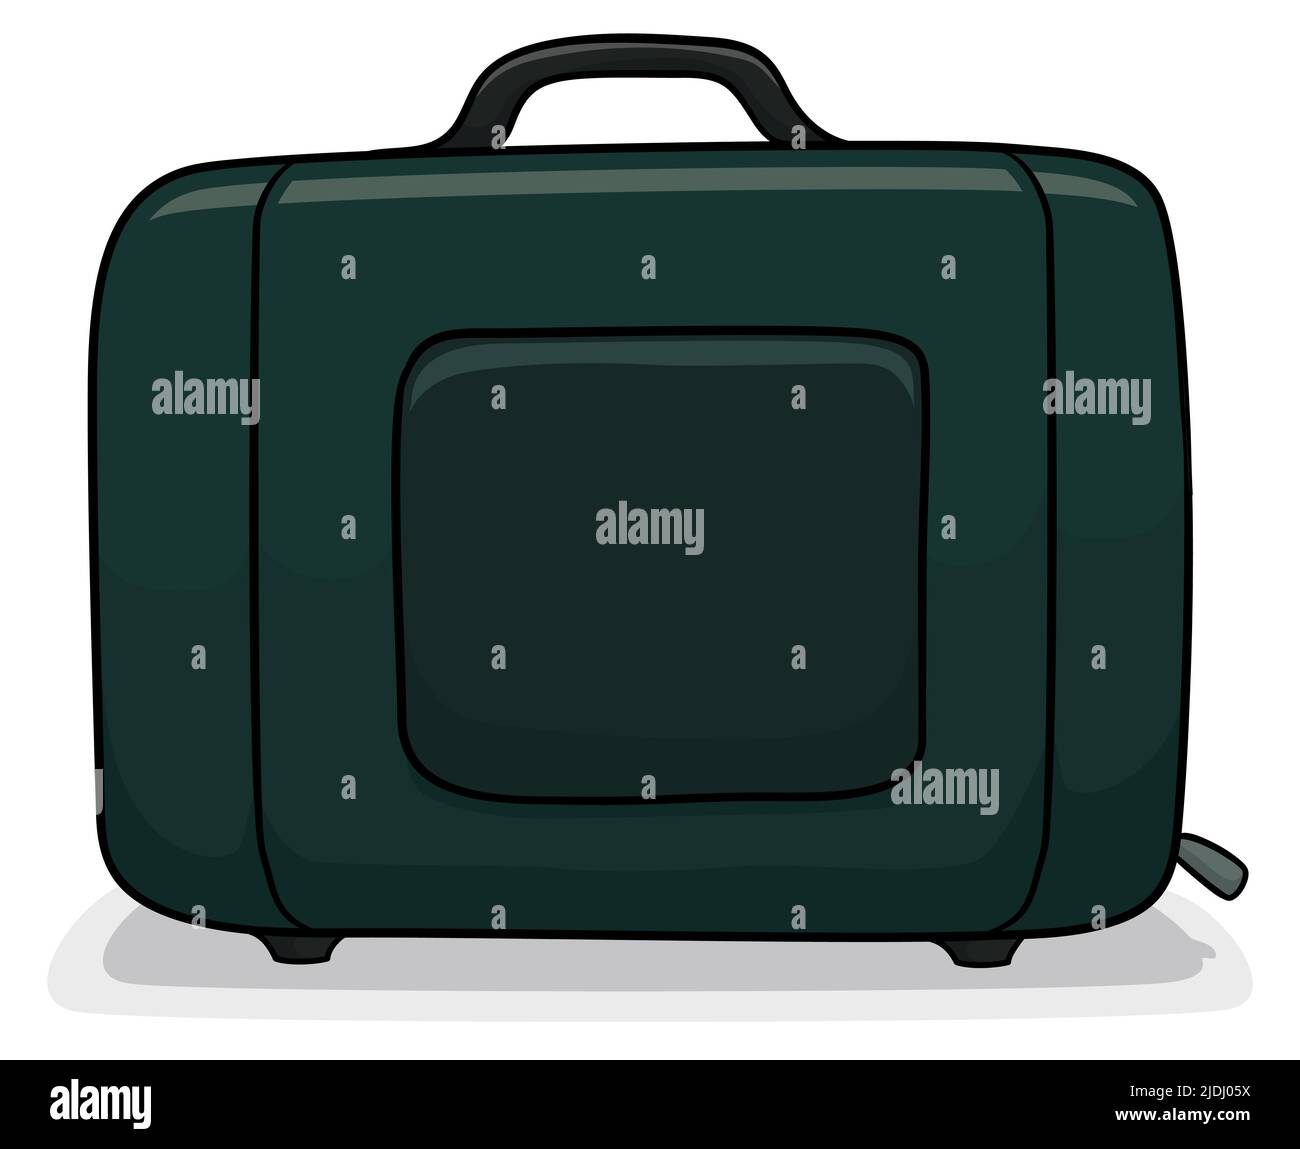 Vue de la valise verte sombre, prête à voyager avec elle. Design de style dessin animé, isolé sur fond blanc. Illustration de Vecteur